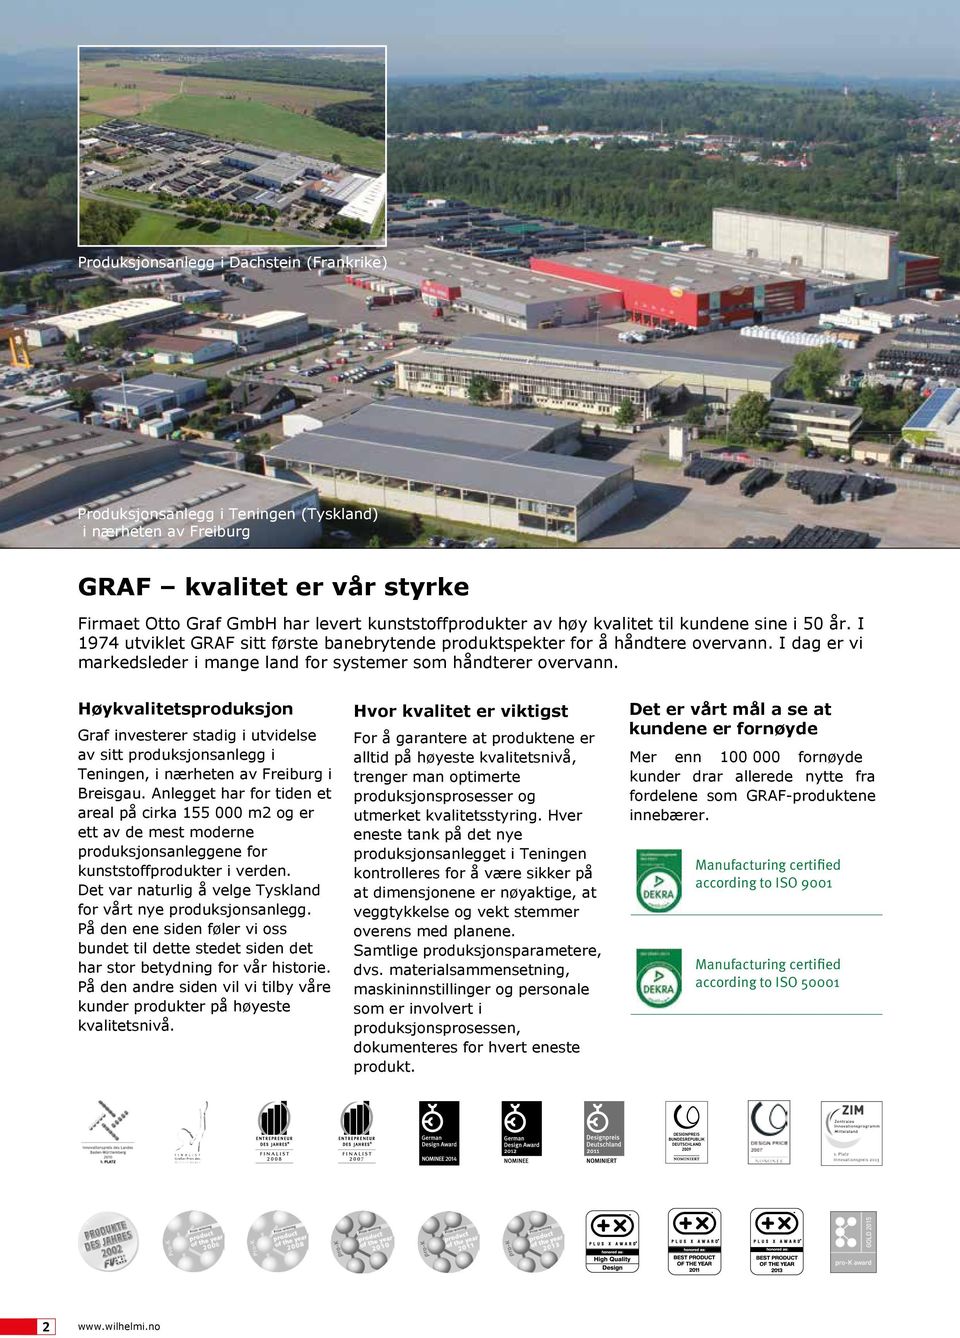 Høykvaitetsproduksjon Graf investerer stadig i utvidese av sitt produksjonsanegg i Teningen, i nærheten av Freiburg i Breisgau.